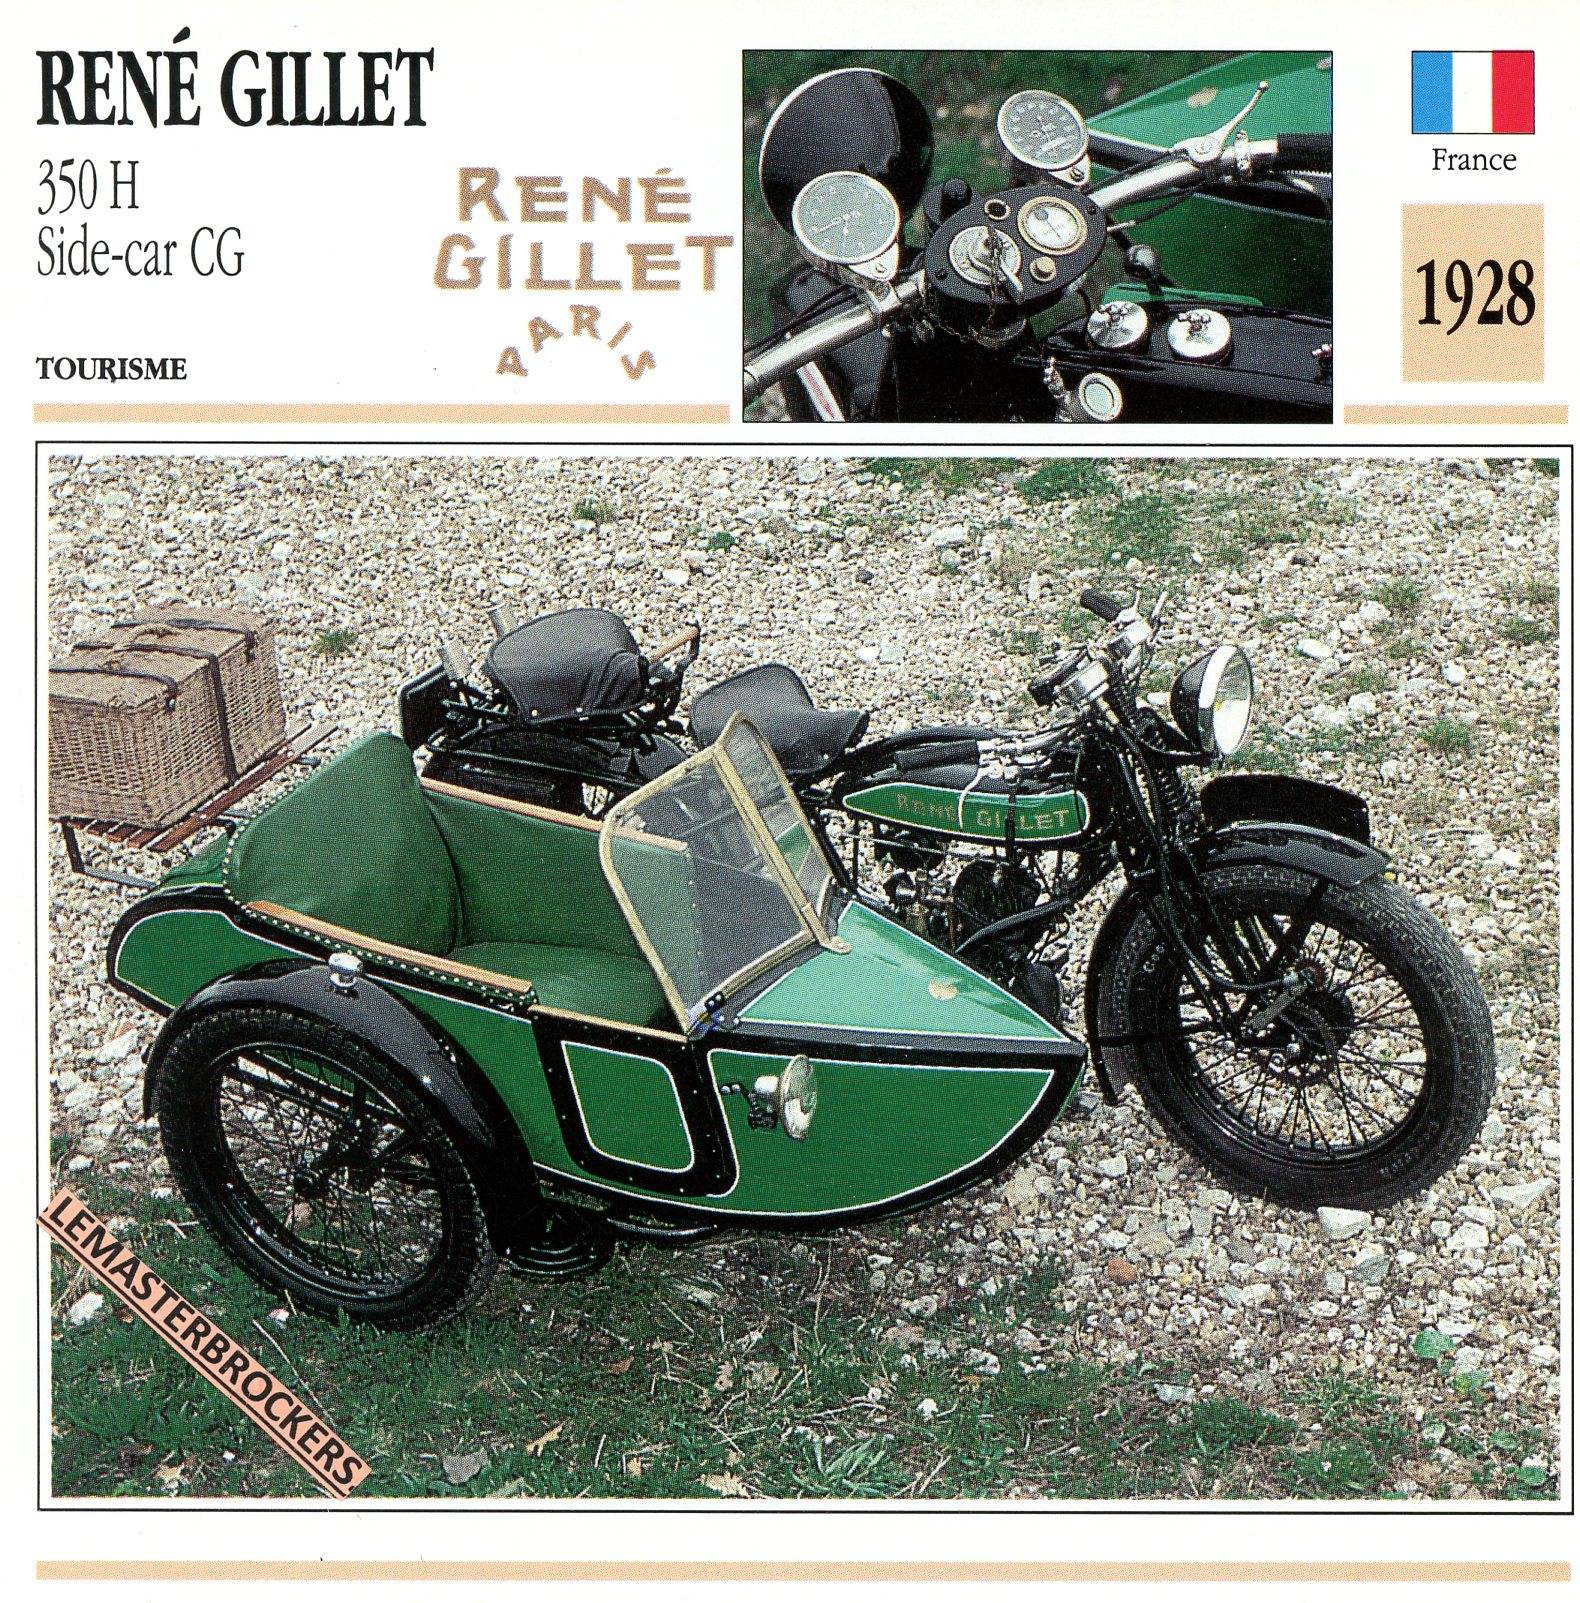 RENÉ GILLET 350H SIDE-CAR CG 1928 - FICHE MOTO ATLAS